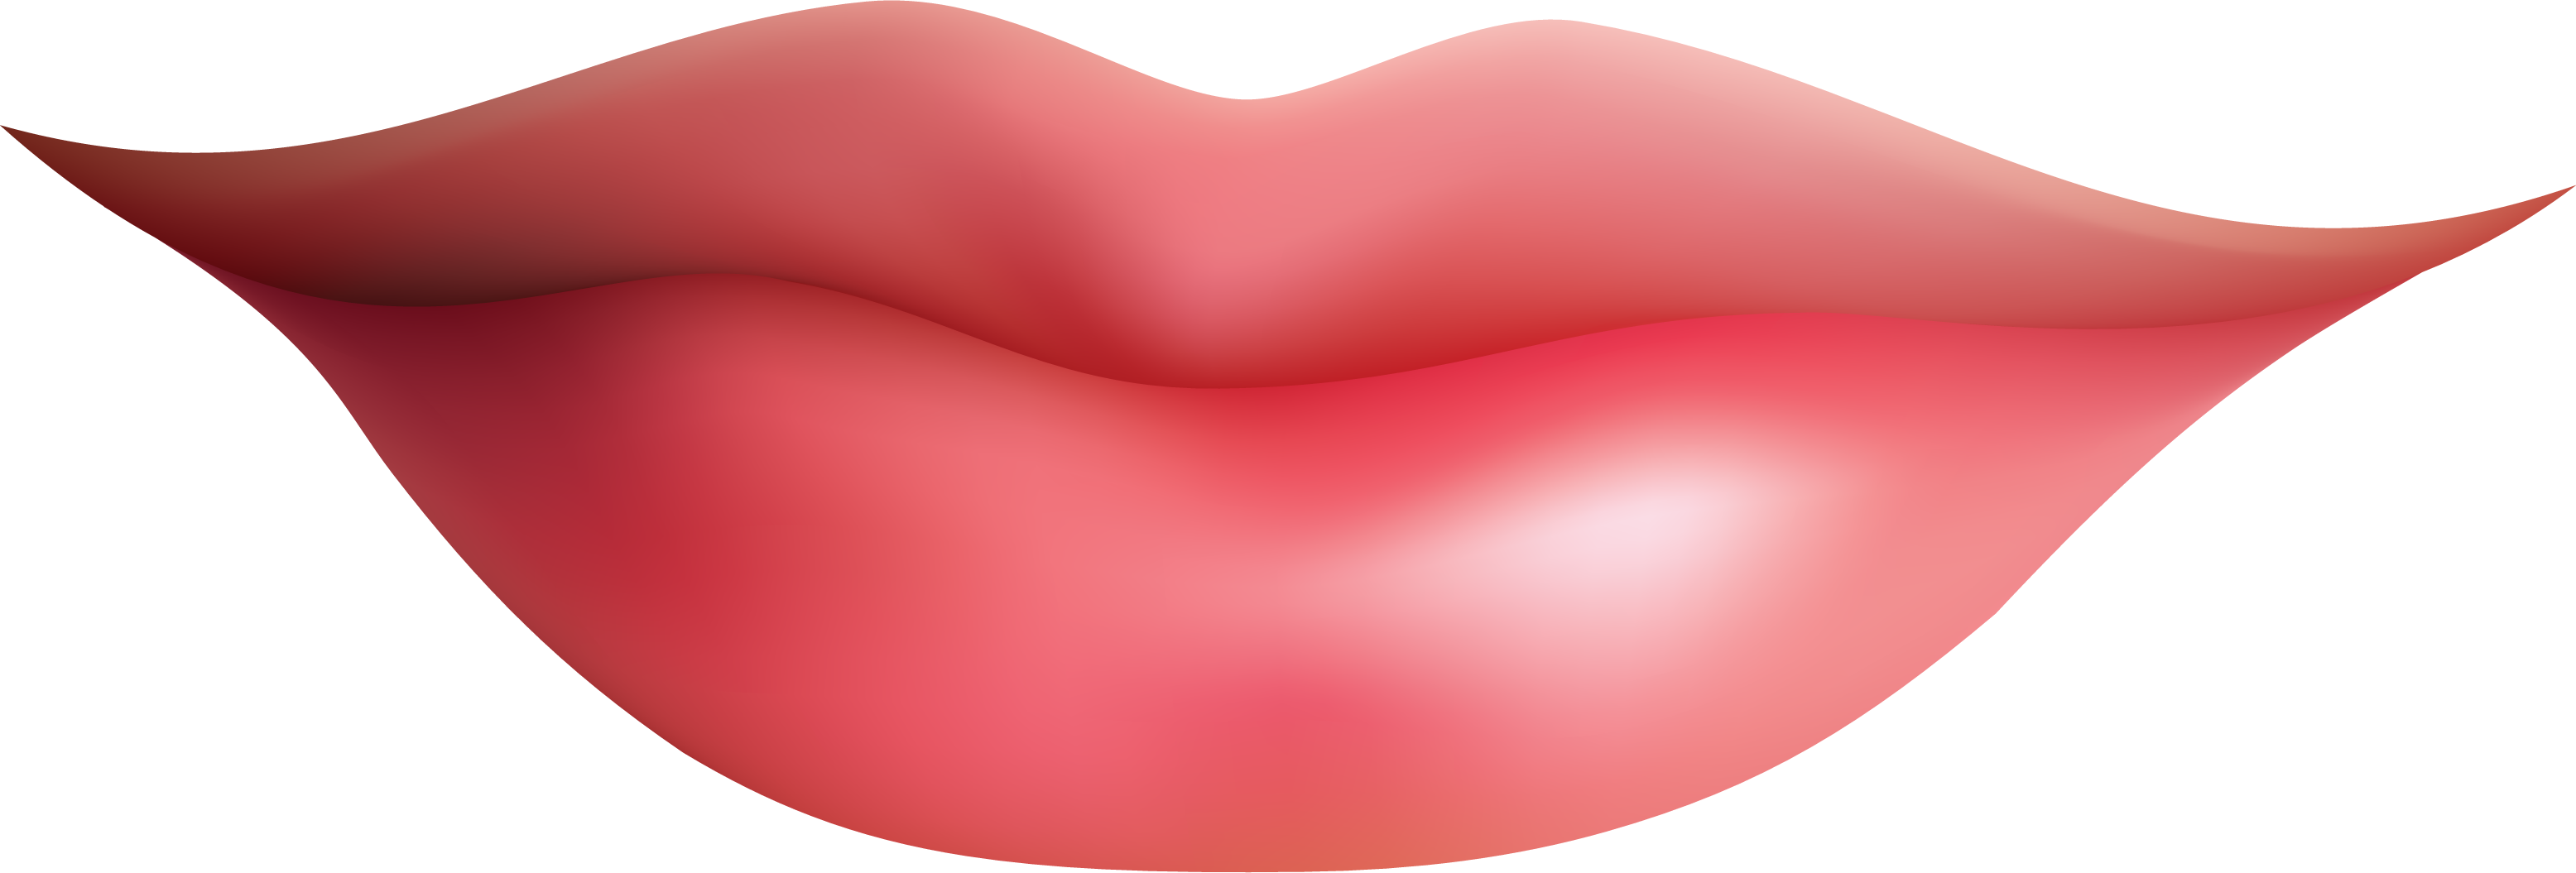 Zipped Lips PNG - 40806